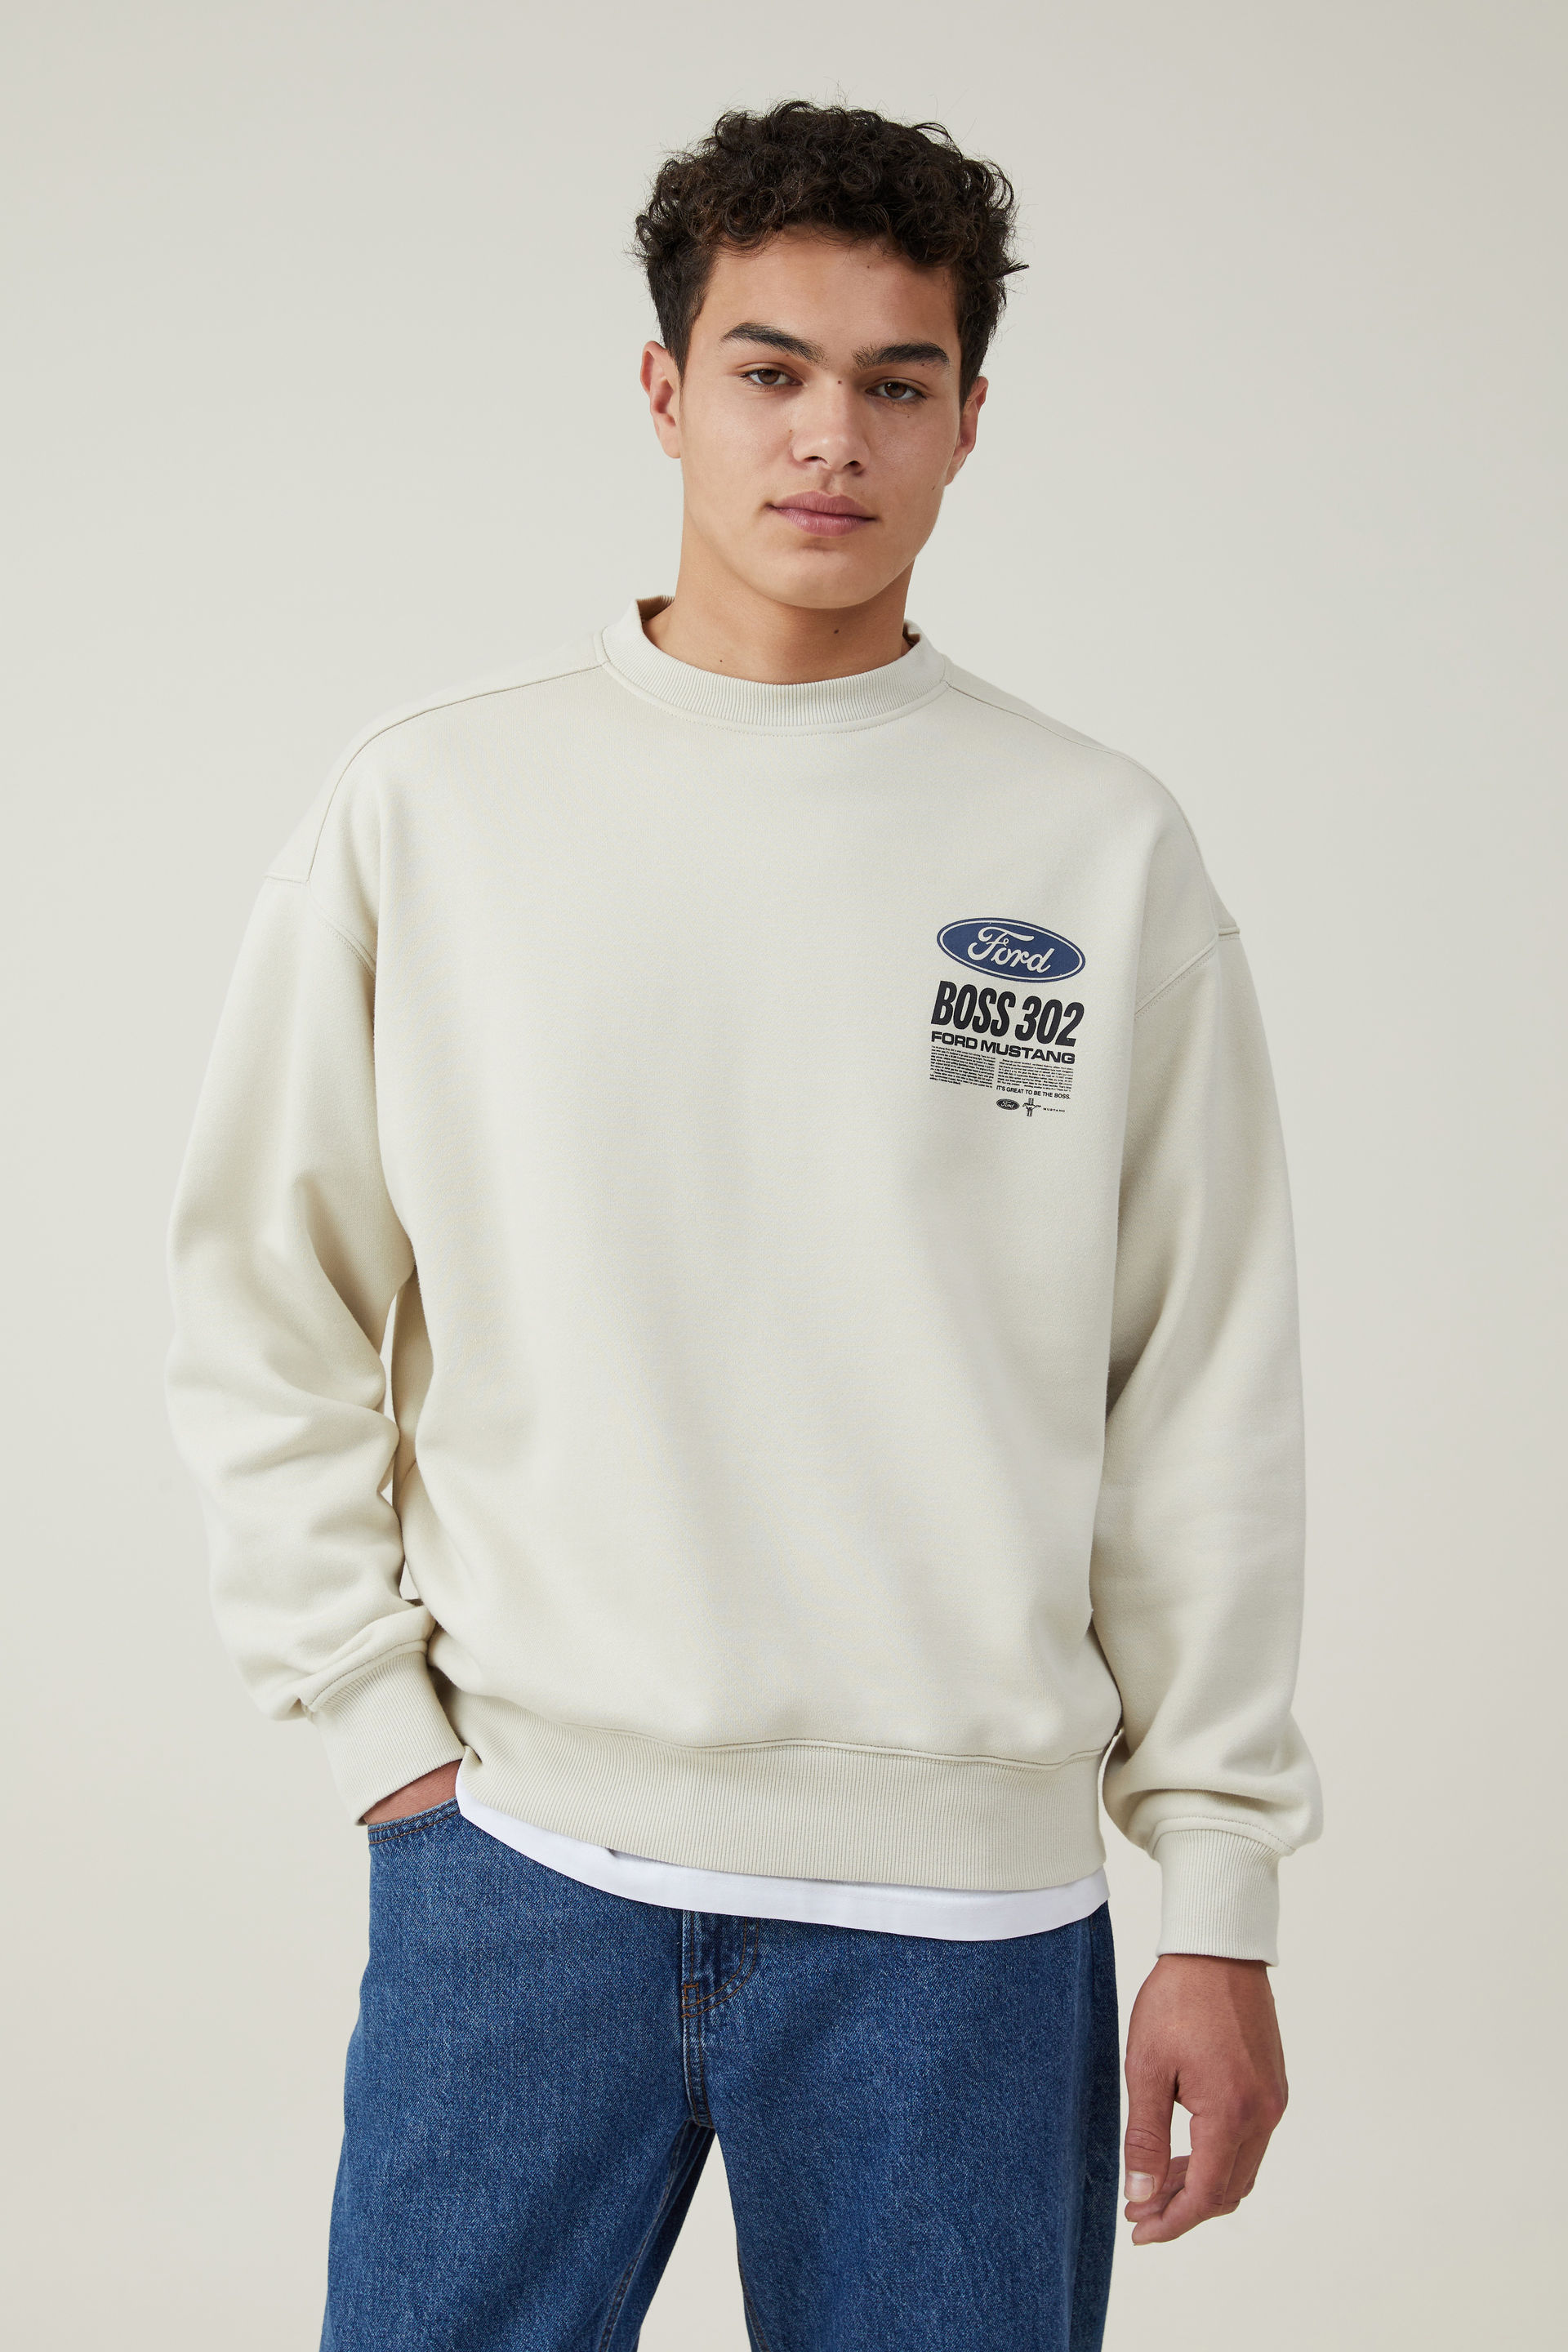 Cotton On Men - Ford Oversized Fleece Sweater - Lcn for ivory/ boss 302